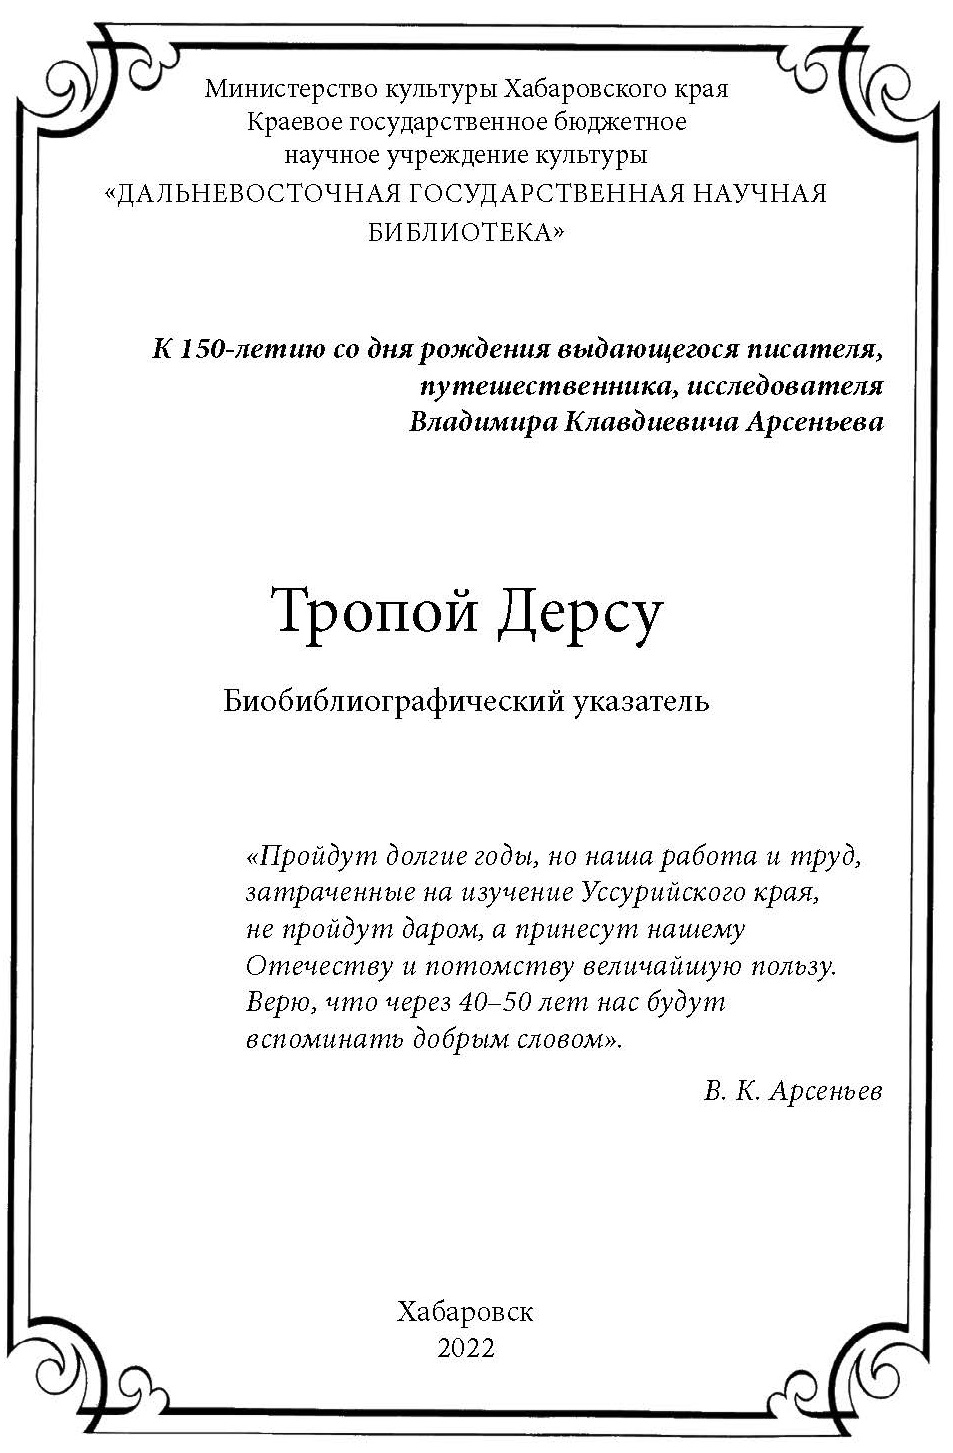 Обновилась электронная версия библиографического указателя «Тропой Дерсу» к 150-летию со дня рождения В. К. Арсеньева